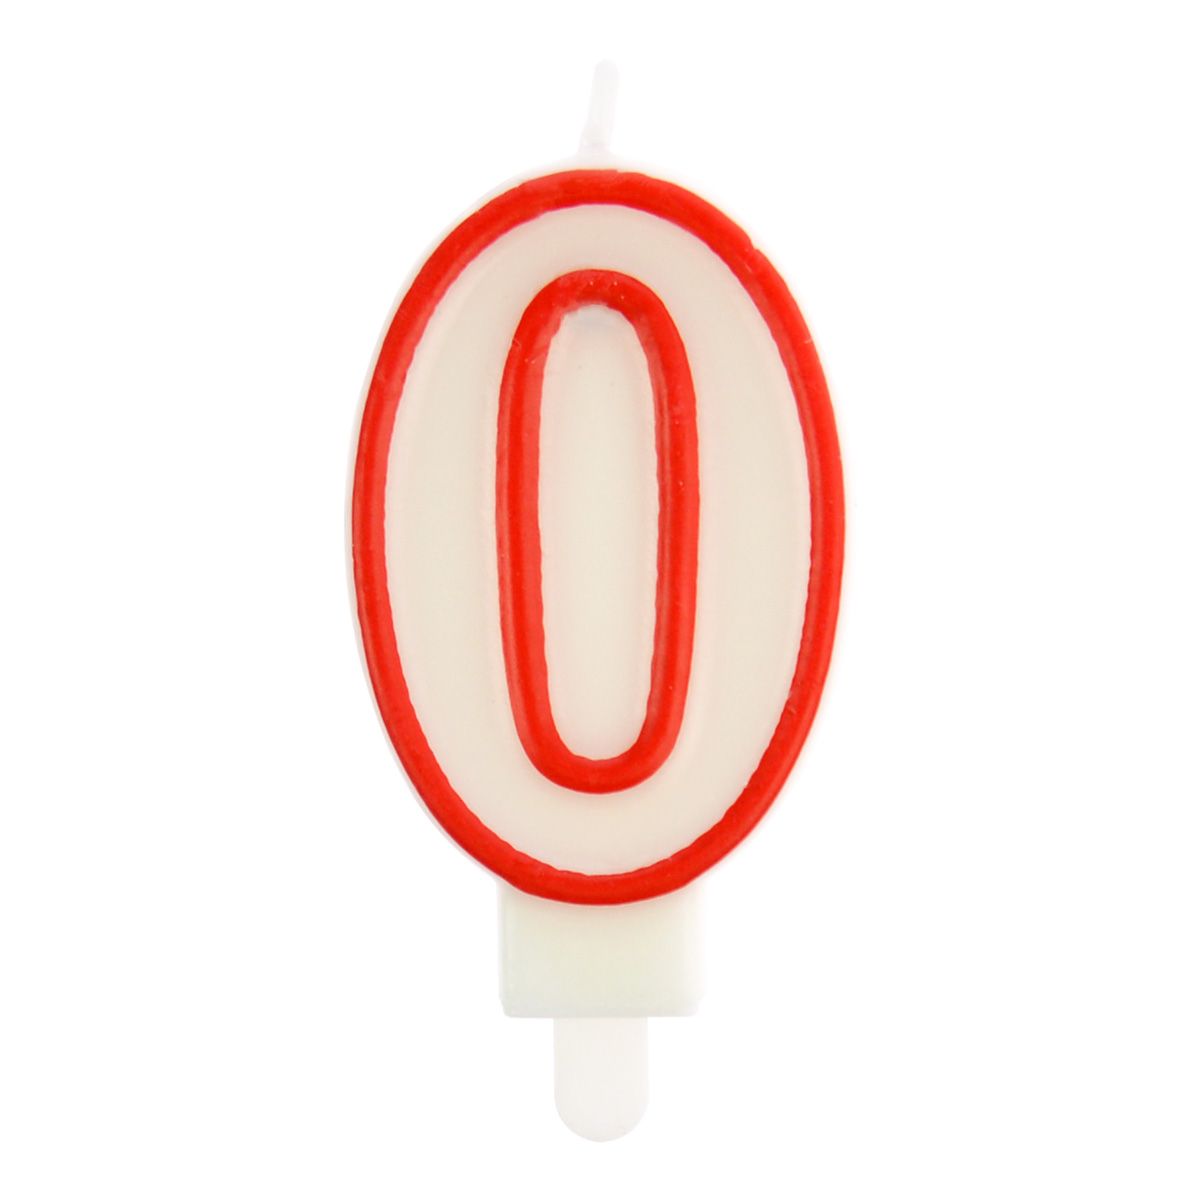 Świeczka urodzinowa cyferka nr 0 biała czerwona obwódka Arpex (DS0033CZE-0-9906)